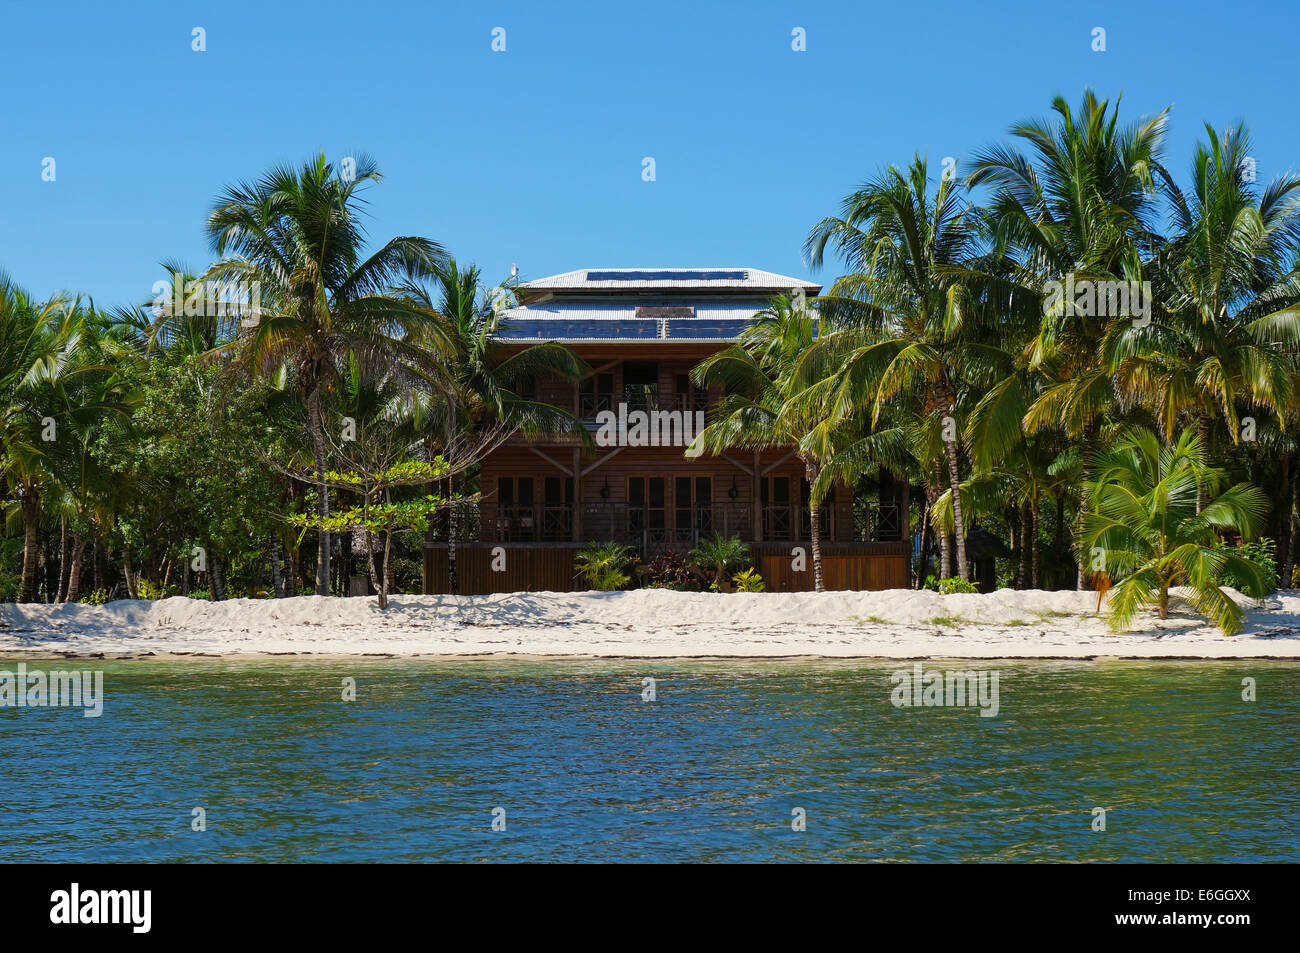 Beach house hors-réseau avec des panneaux solaires sur le toit et d'une végétation tropicale sur une île de la mer des Caraïbes, le Panama Banque D'Images